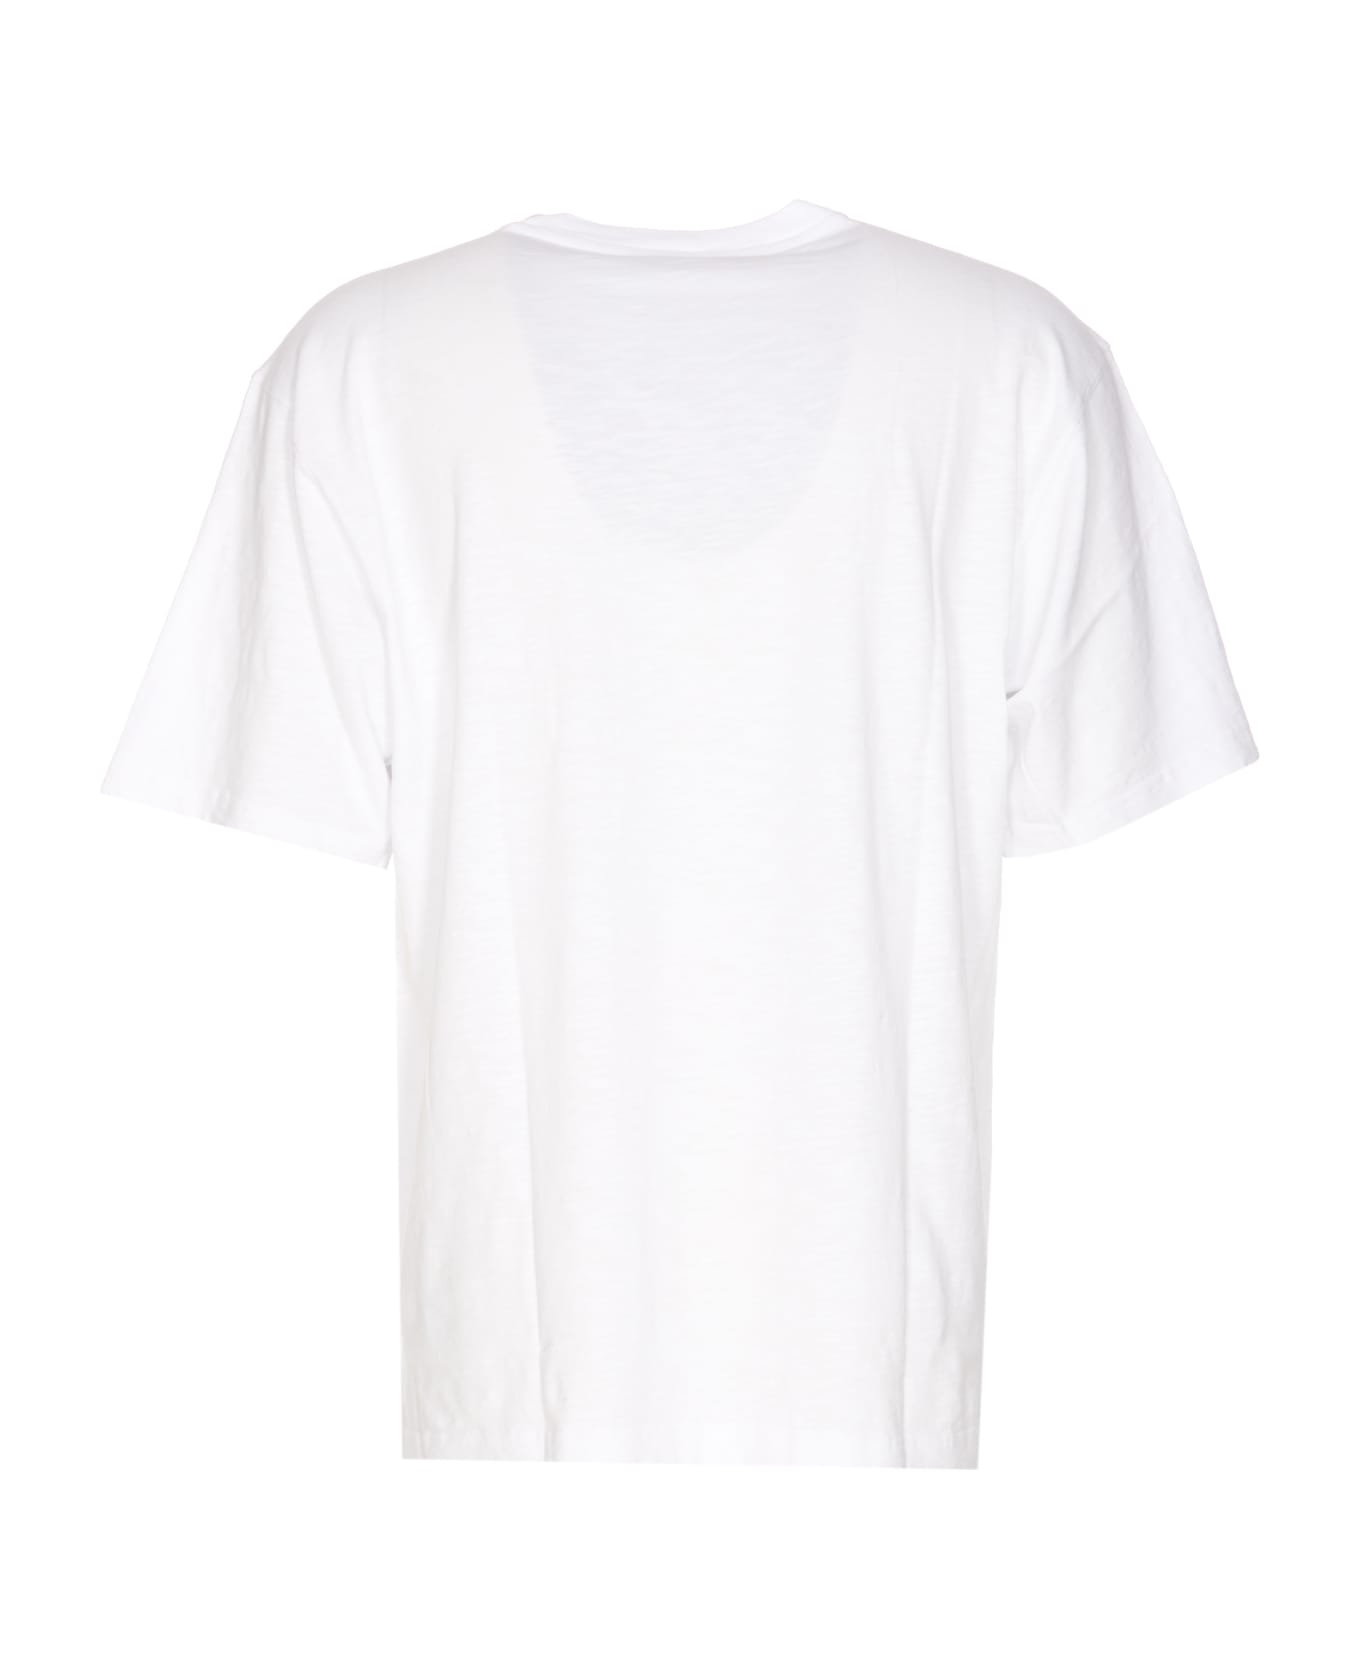 Dolce & Gabbana Logo T-shirt - Optical white